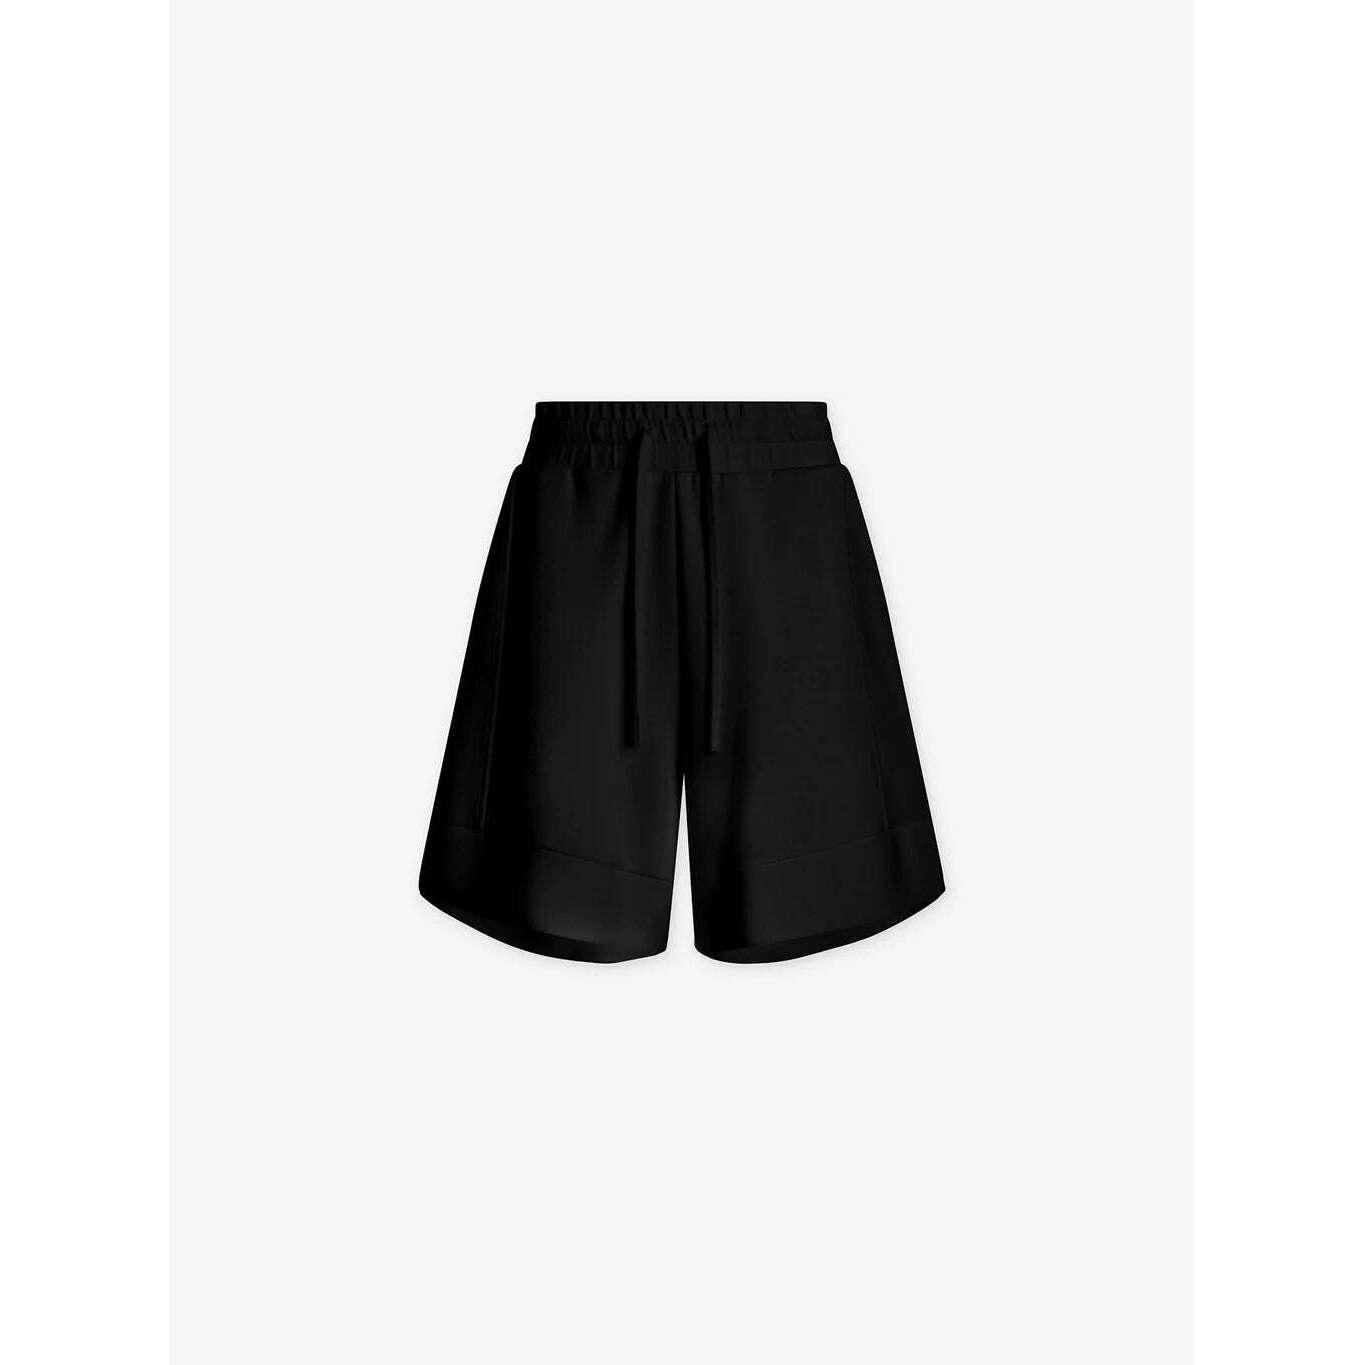 8.28 Boutique:Varley,Varley Adler Shorts 5.5 in Black,shorts